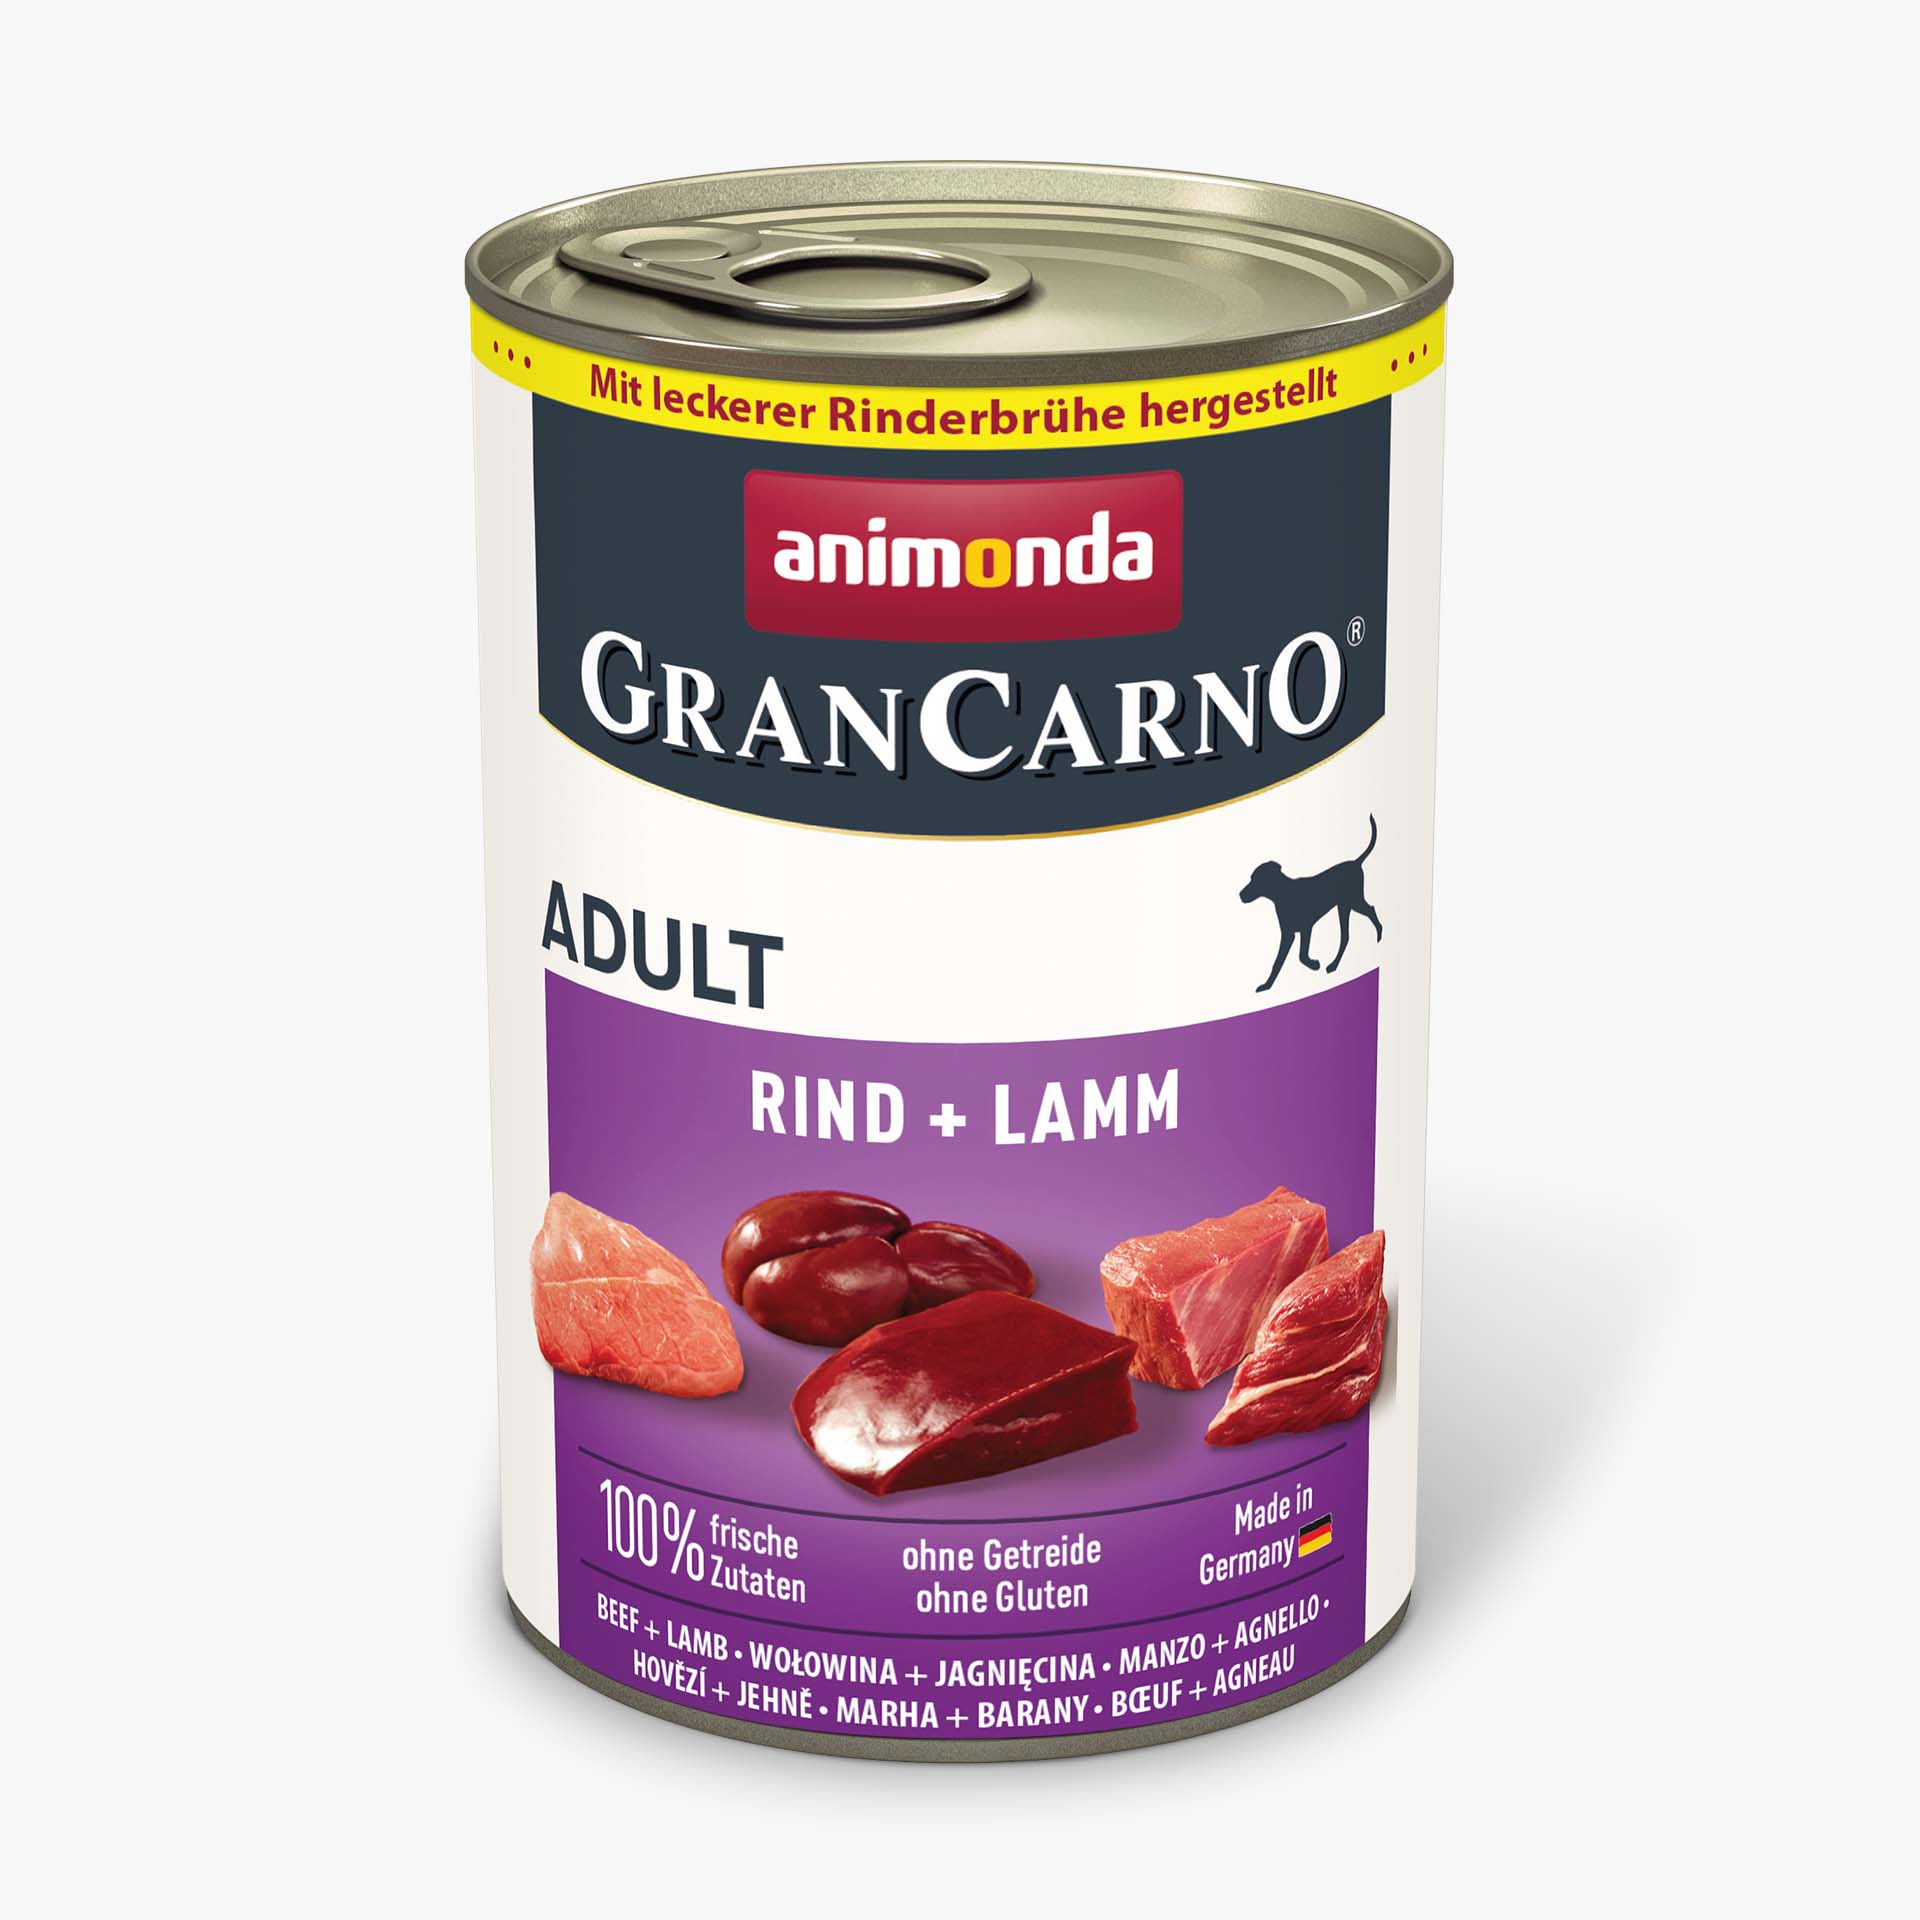 GranCarno beef + lamb 